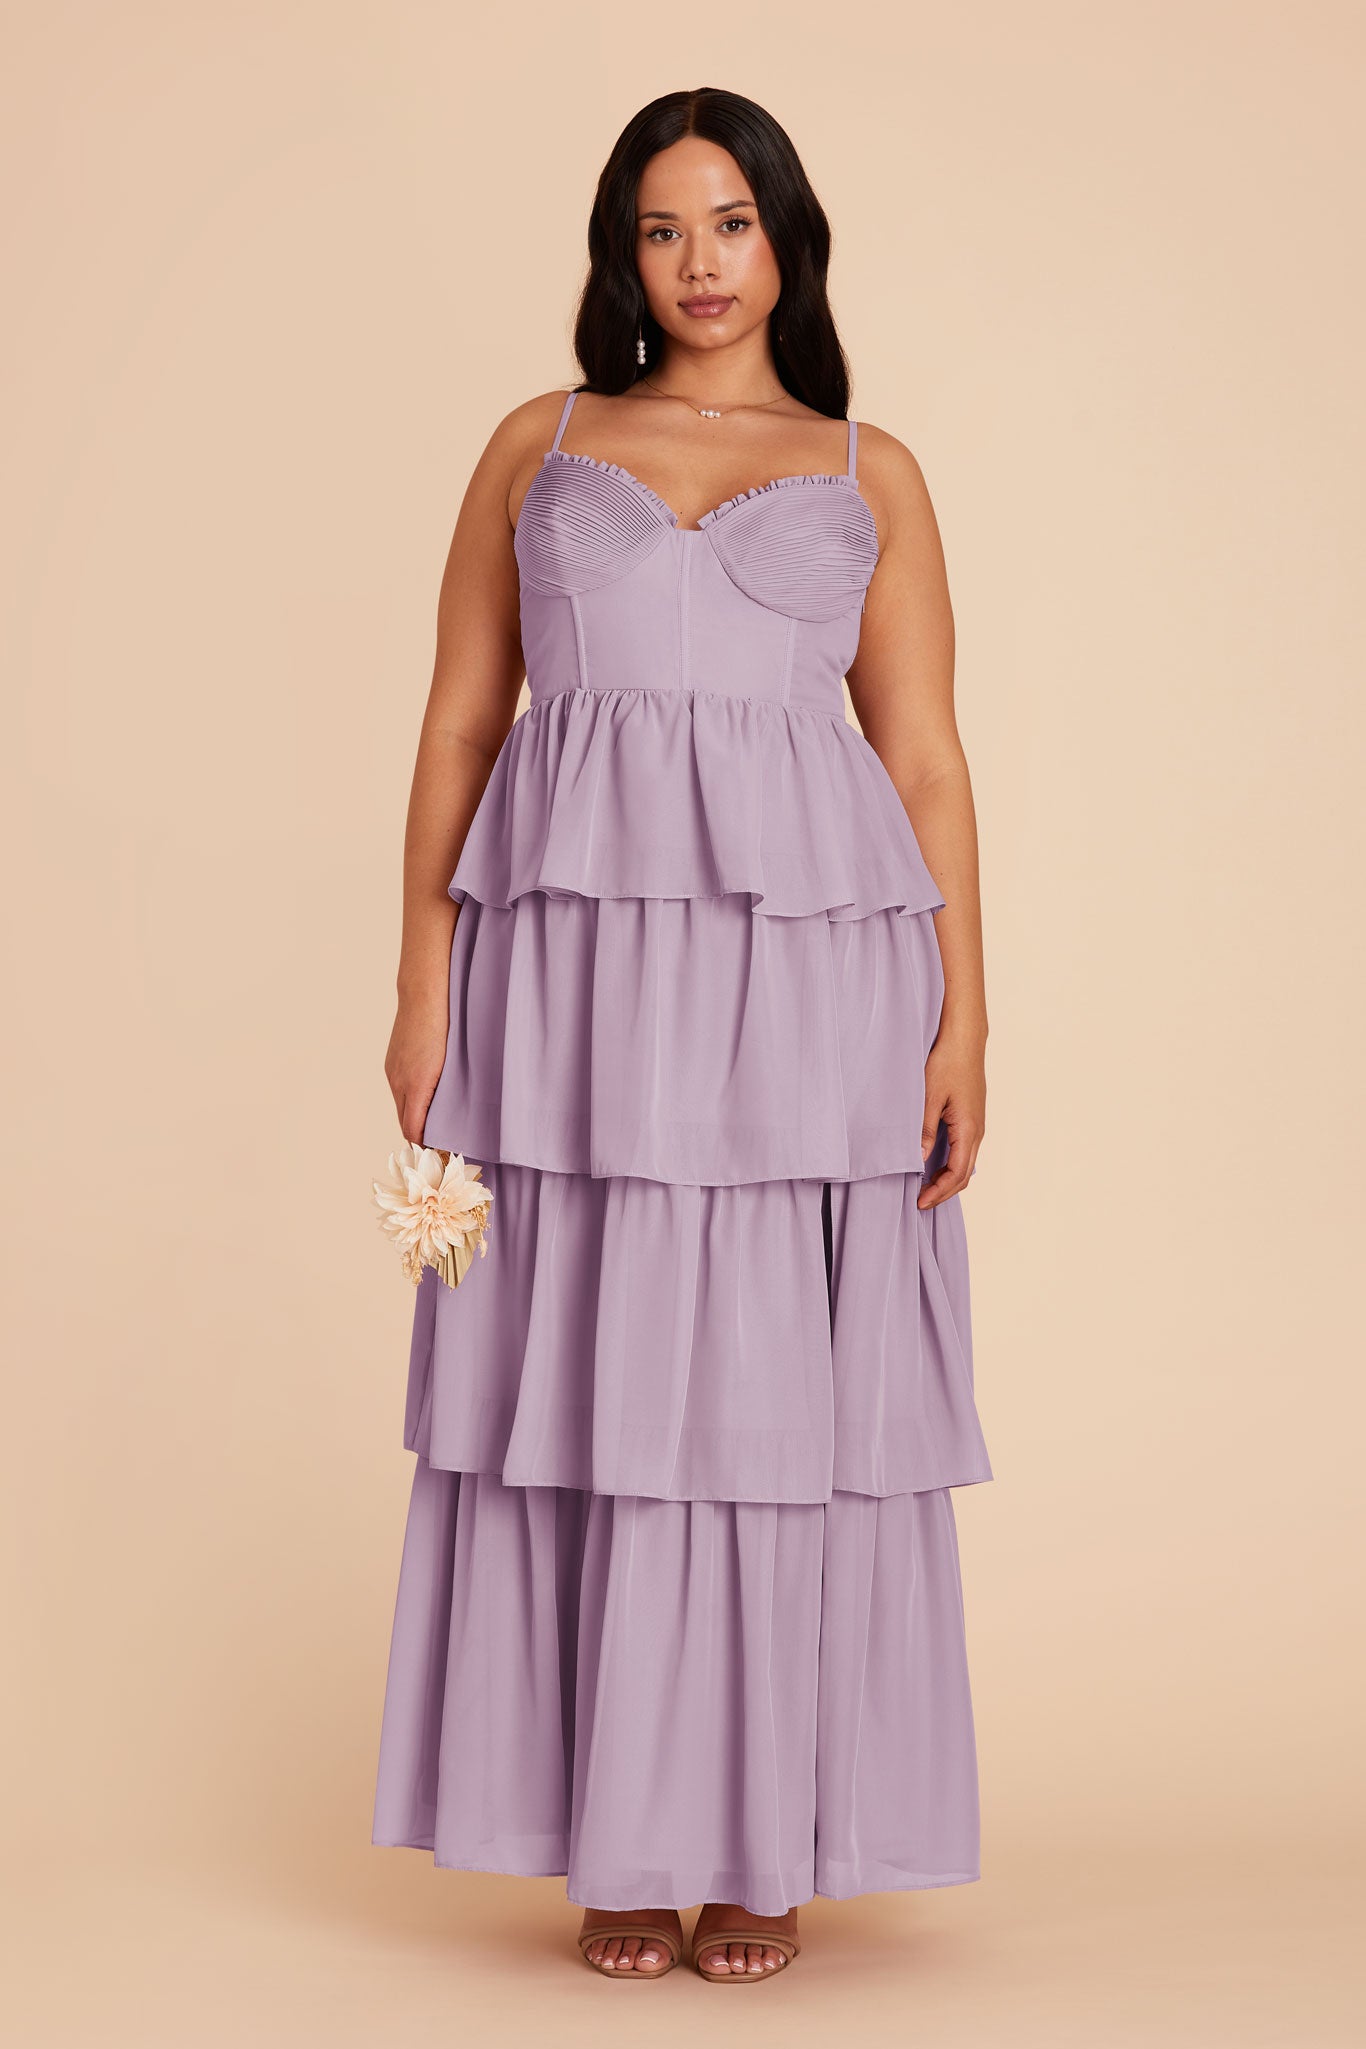 Lavender Lola Chiffon Dress by Birdy Grey